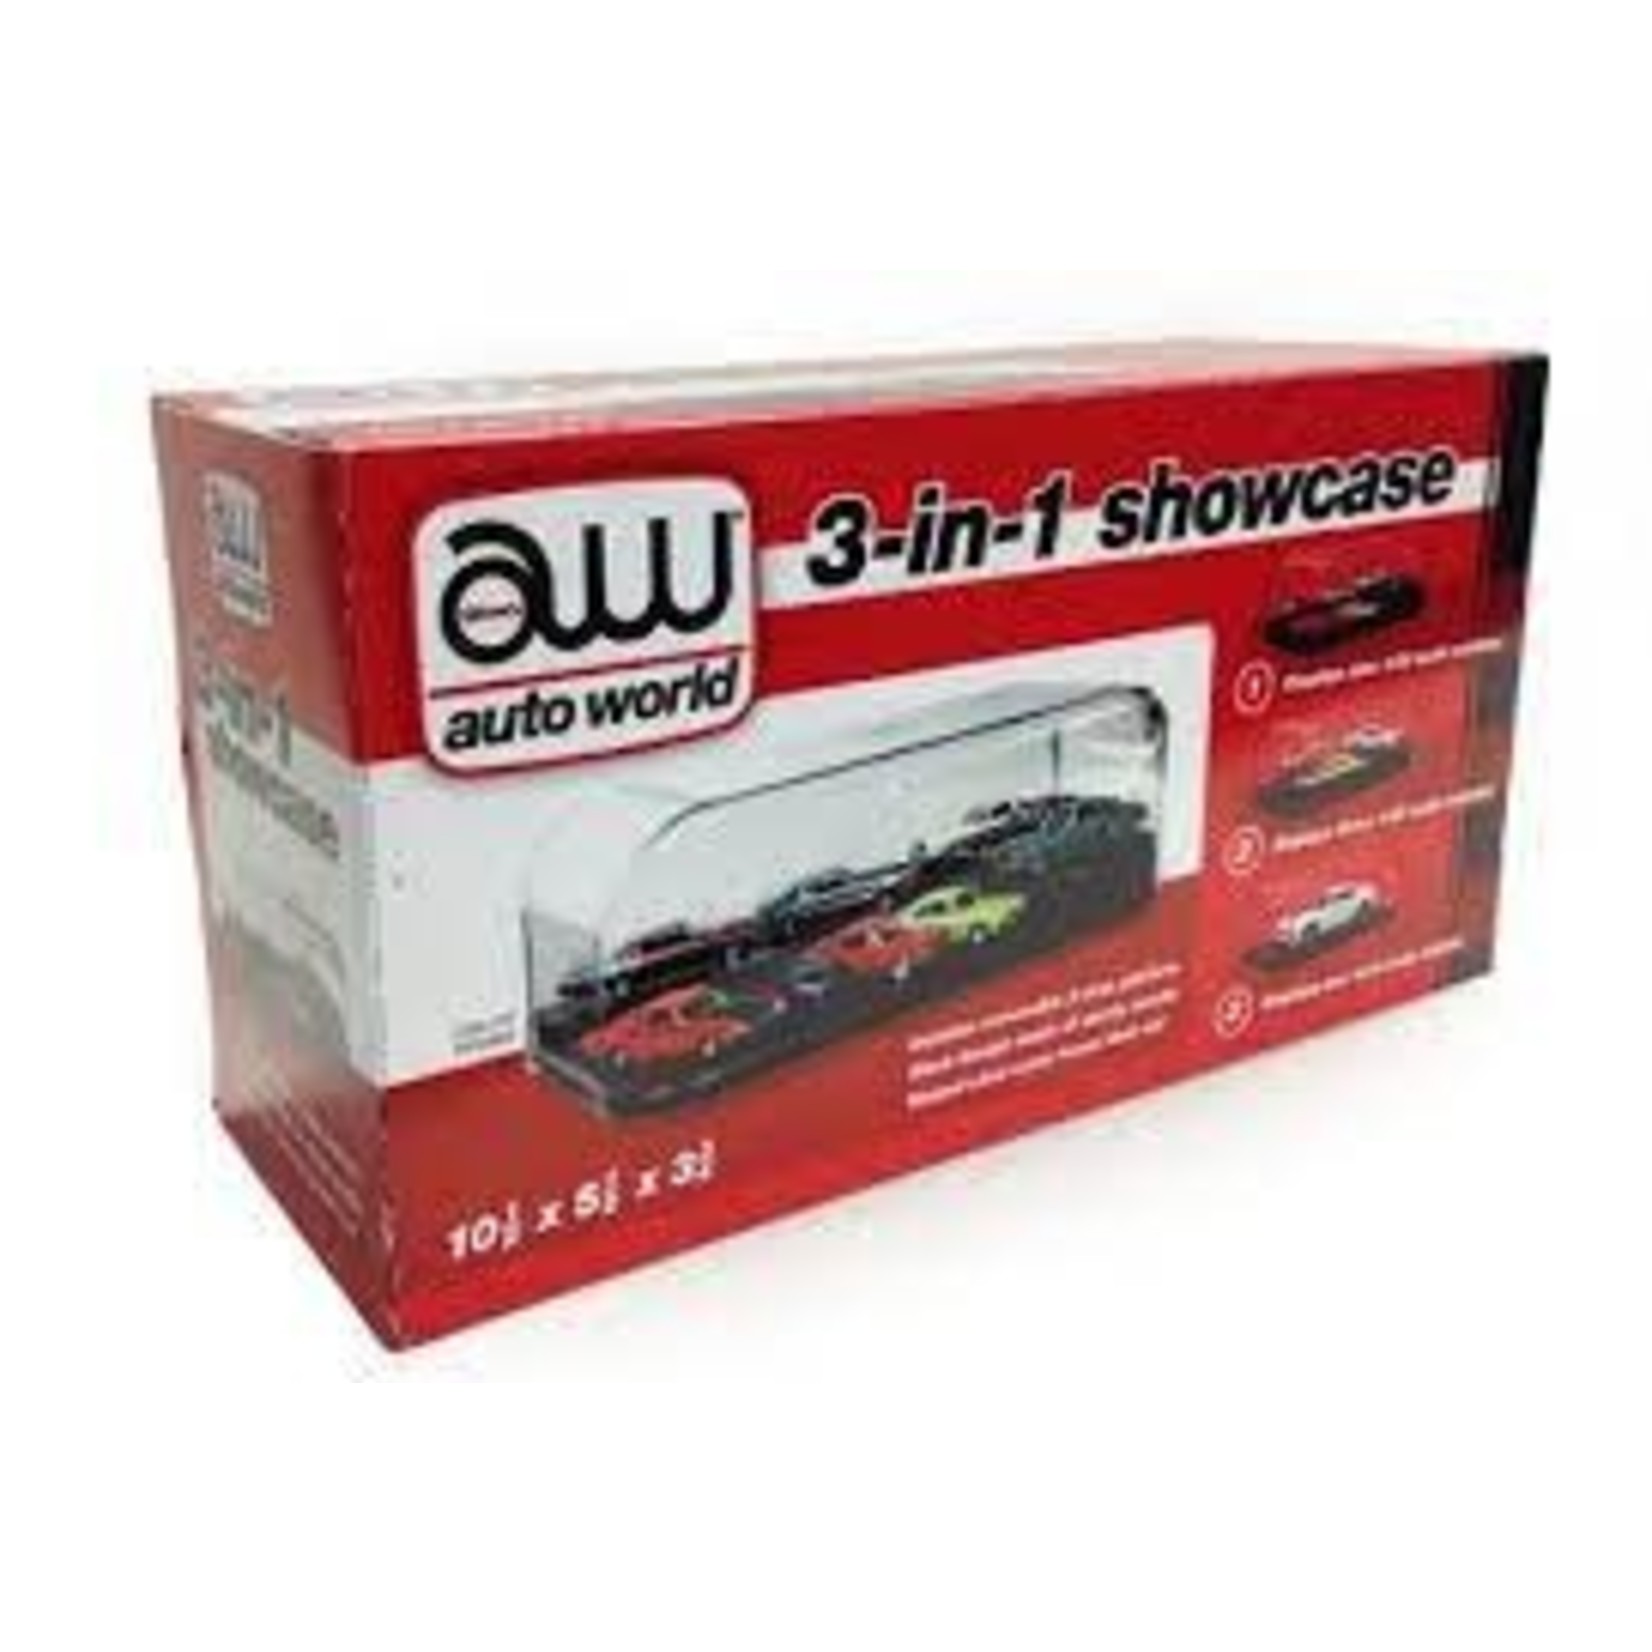 Auto World 3 in 1 Showcase 1/64